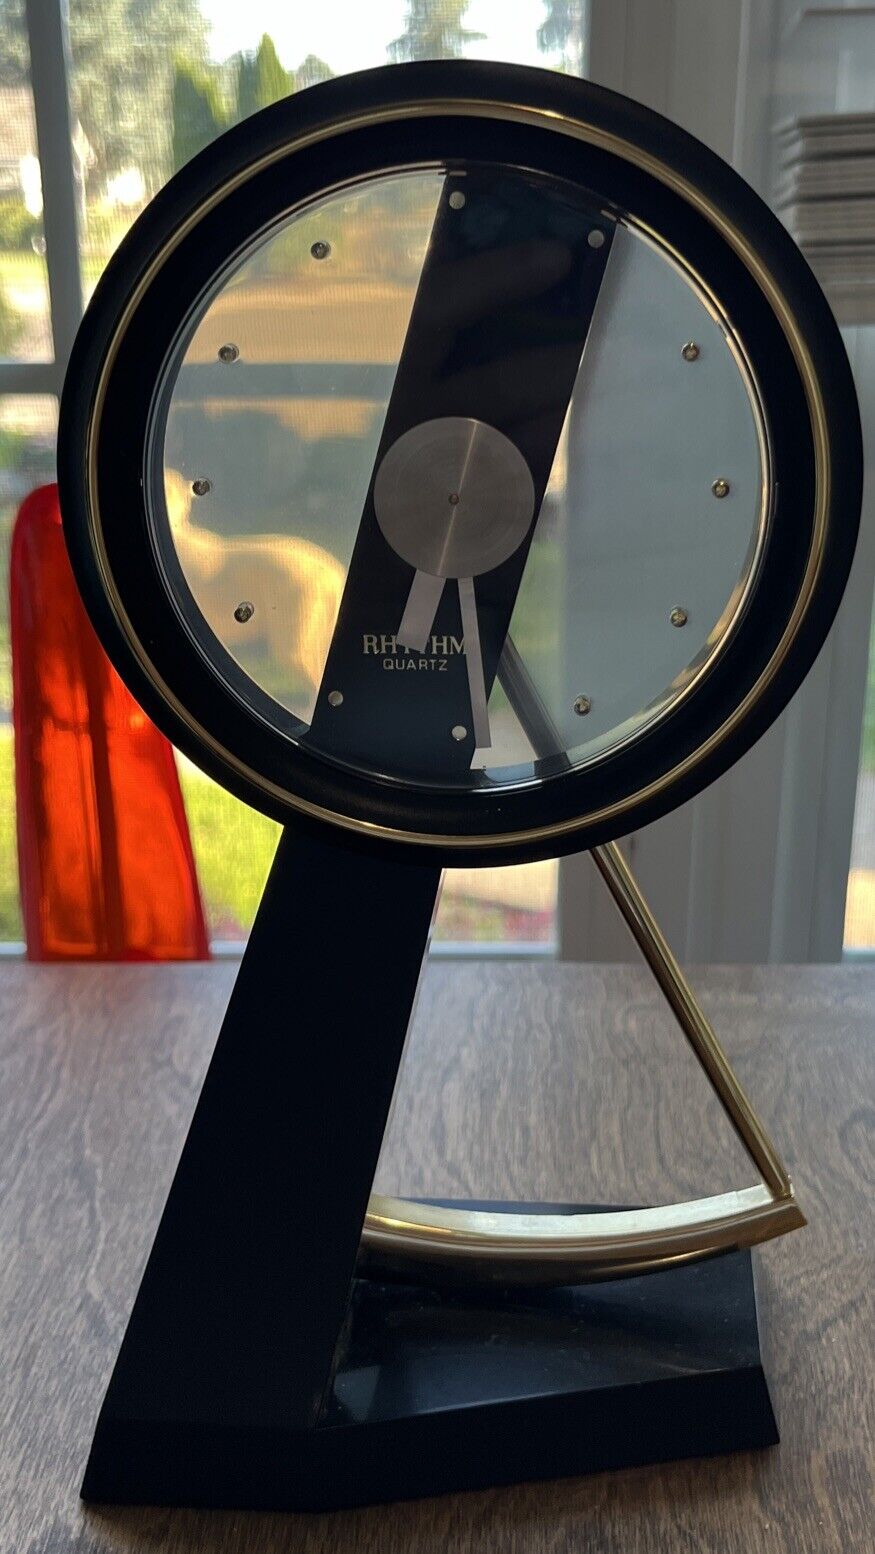 Vintage Rhythm Quartz Pendulum Clock Unique style Works Includes Battery